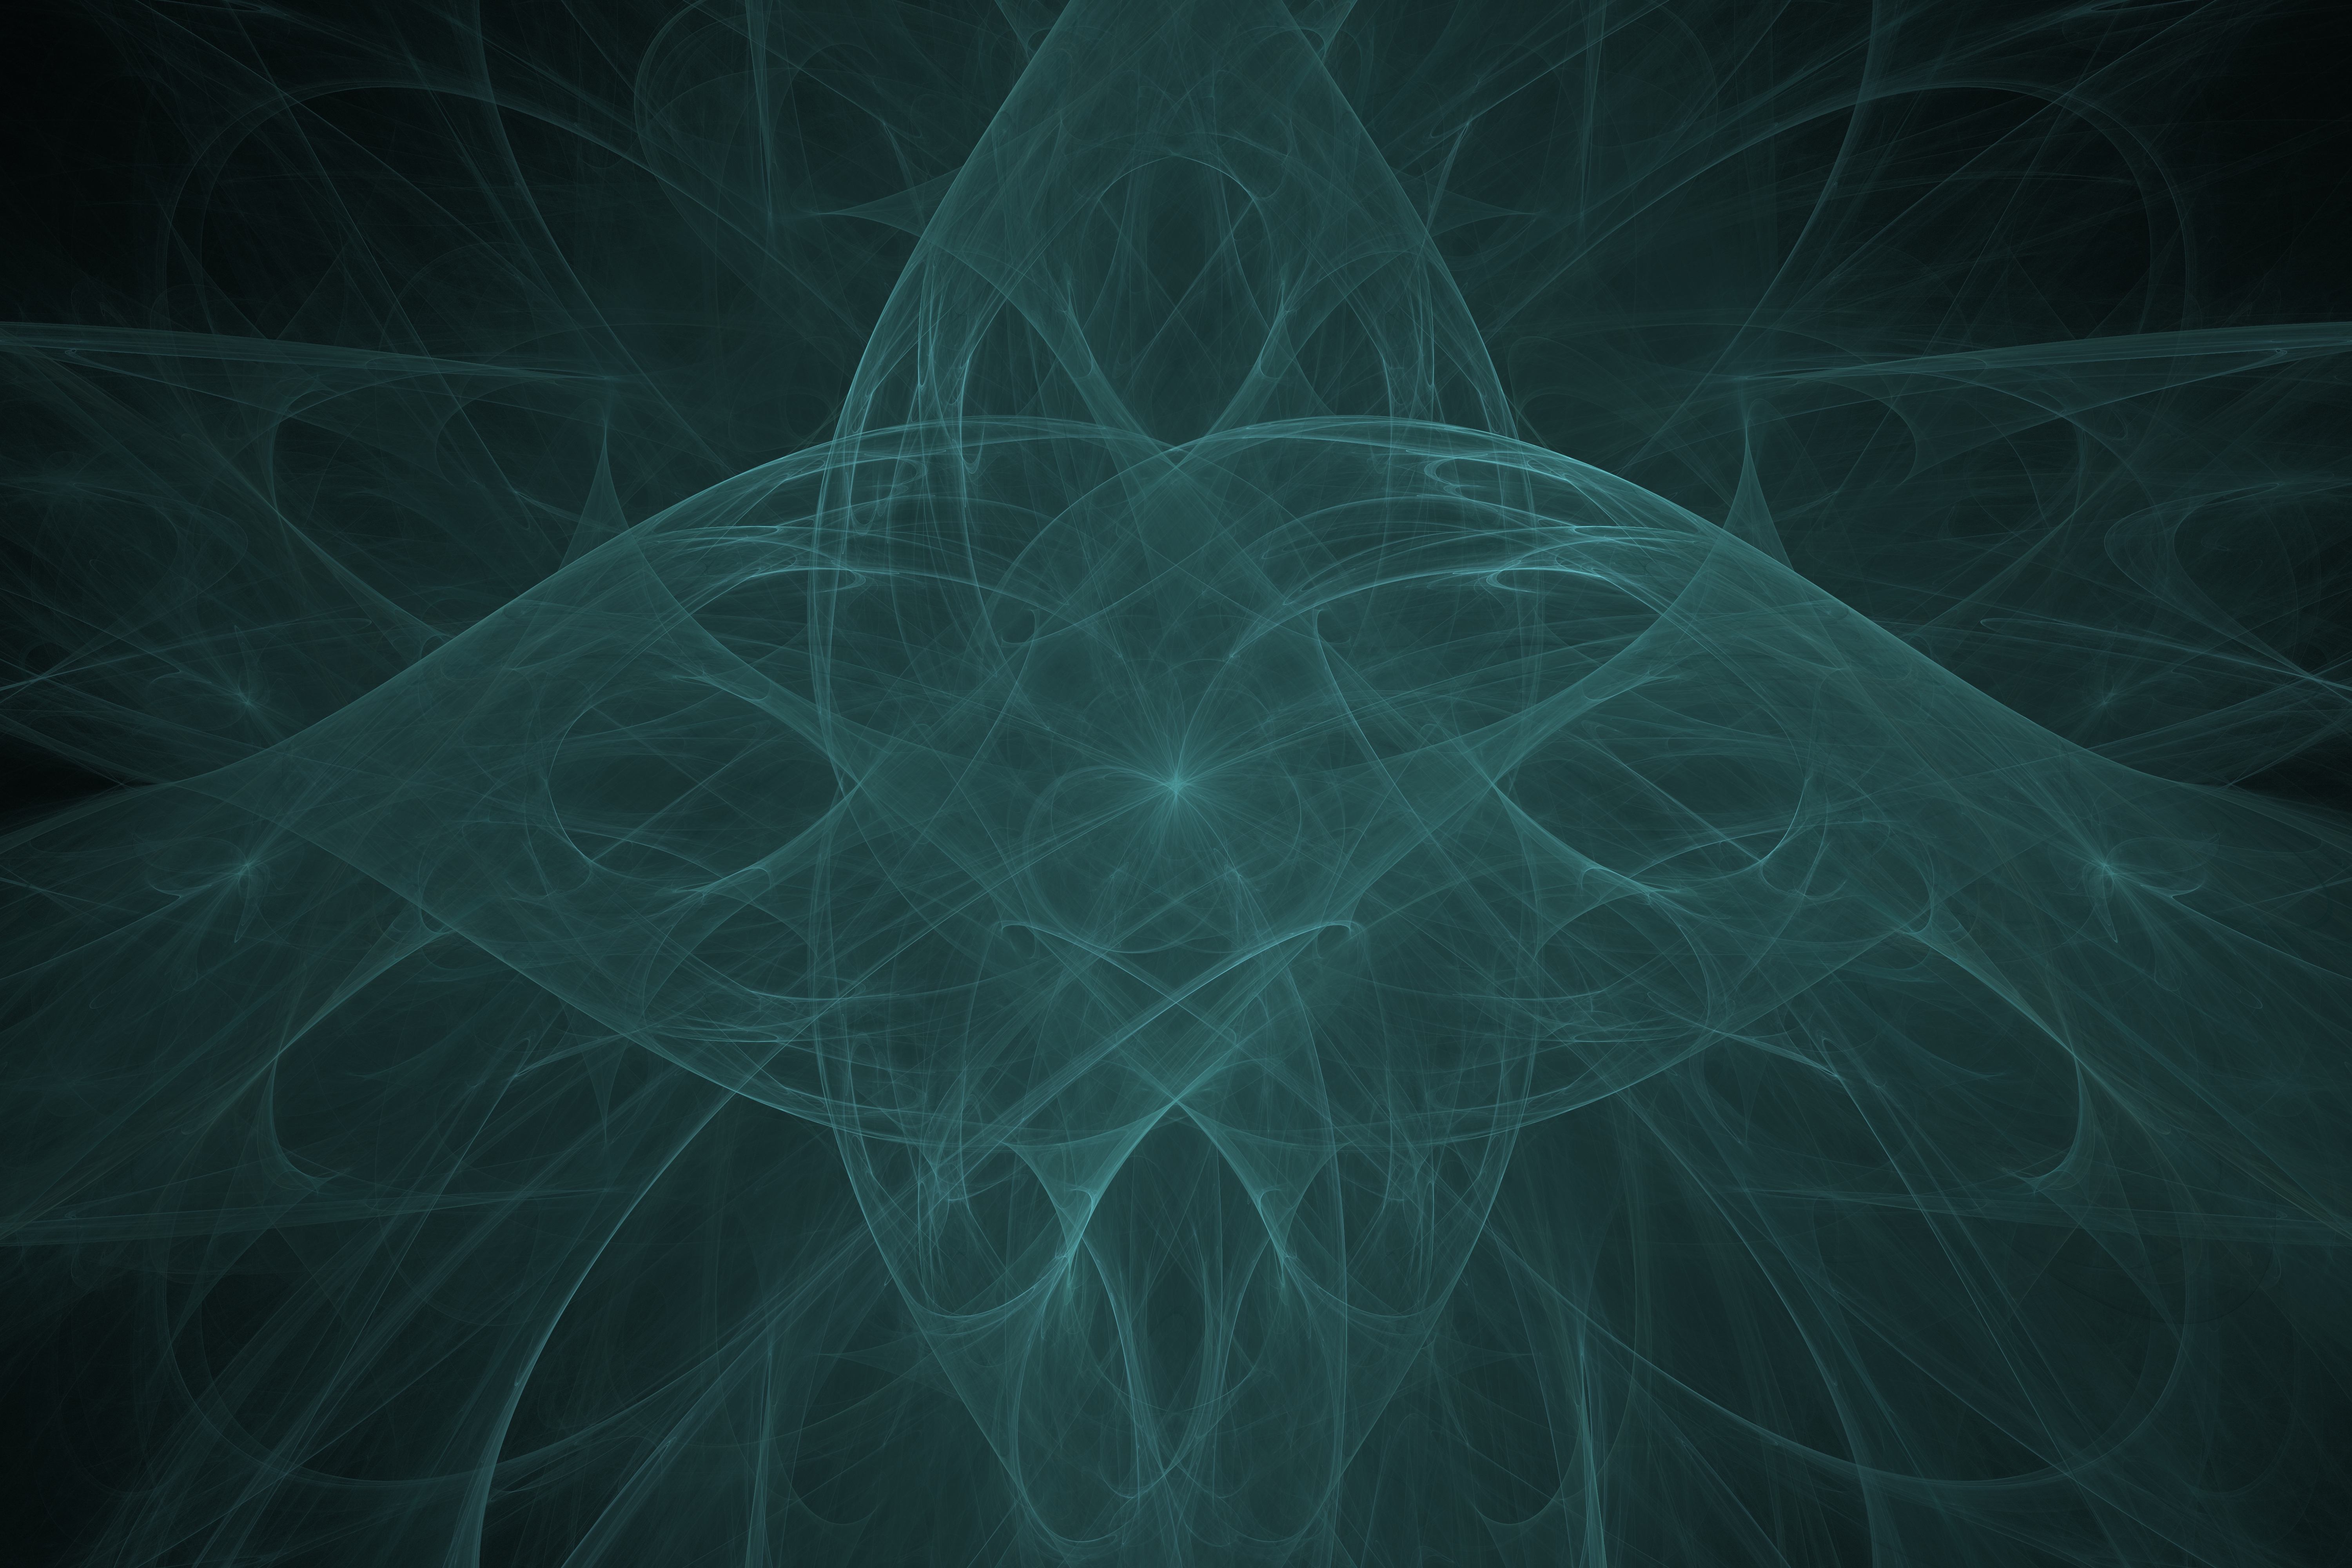 Fractal Energy Field Abstract Mathematics Digital Art 6000x4000